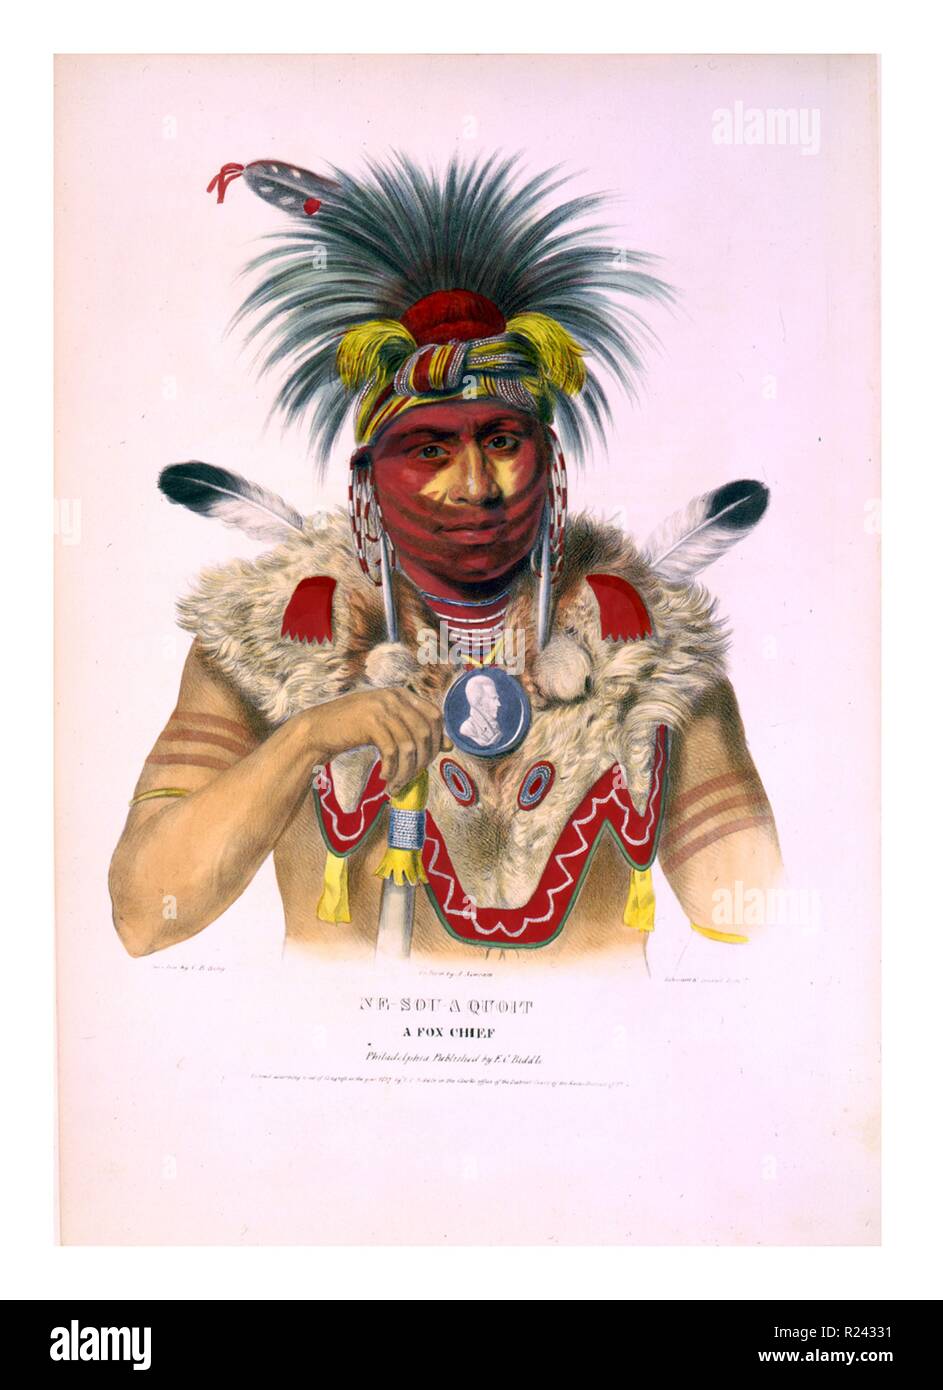 Ne-Sou - ein quoit, ein Fuchs chief Tragekomfort aufwendige Kopfschmuck, Ohrringe, Halskette und Fell schulter kleid, sowie ein Portrait Medaillon um den Hals. Die Mesquakie (meskwaki) sind eine Native American tribe oft zu Außenseitern wie der Fuchs Stamm bekannt. Sie sind häufig eng mit der Sauk Menschen verknüpft. c. 1838 Stockfoto